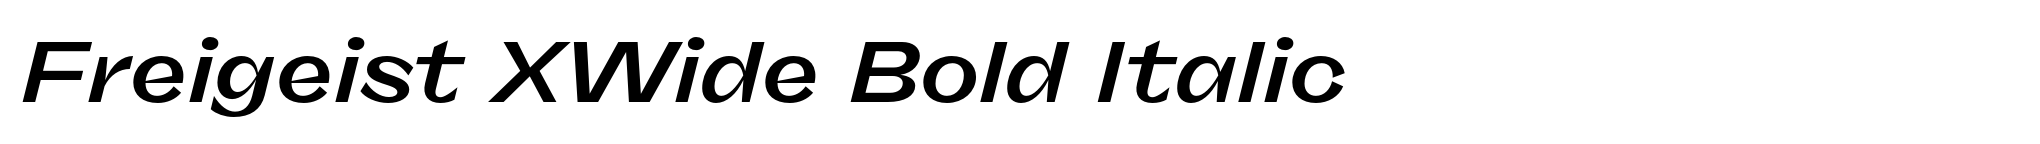 Freigeist XWide Bold Italic image